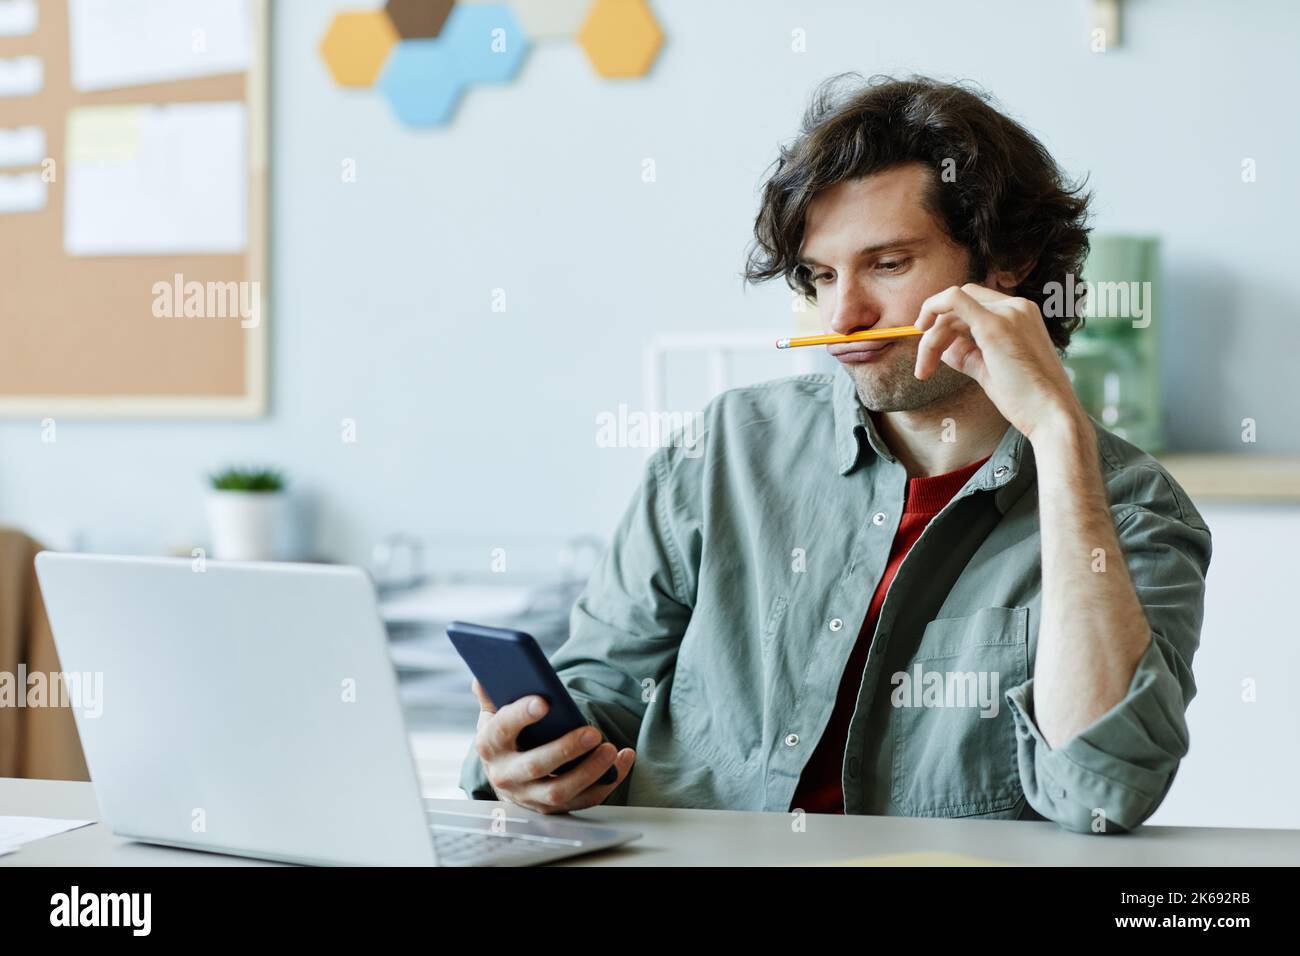 Retrato de un joven caucásico jugando con el lápiz y utilizando el teléfono en el lugar de trabajo que sufría aburrimiento y dilación Foto de stock